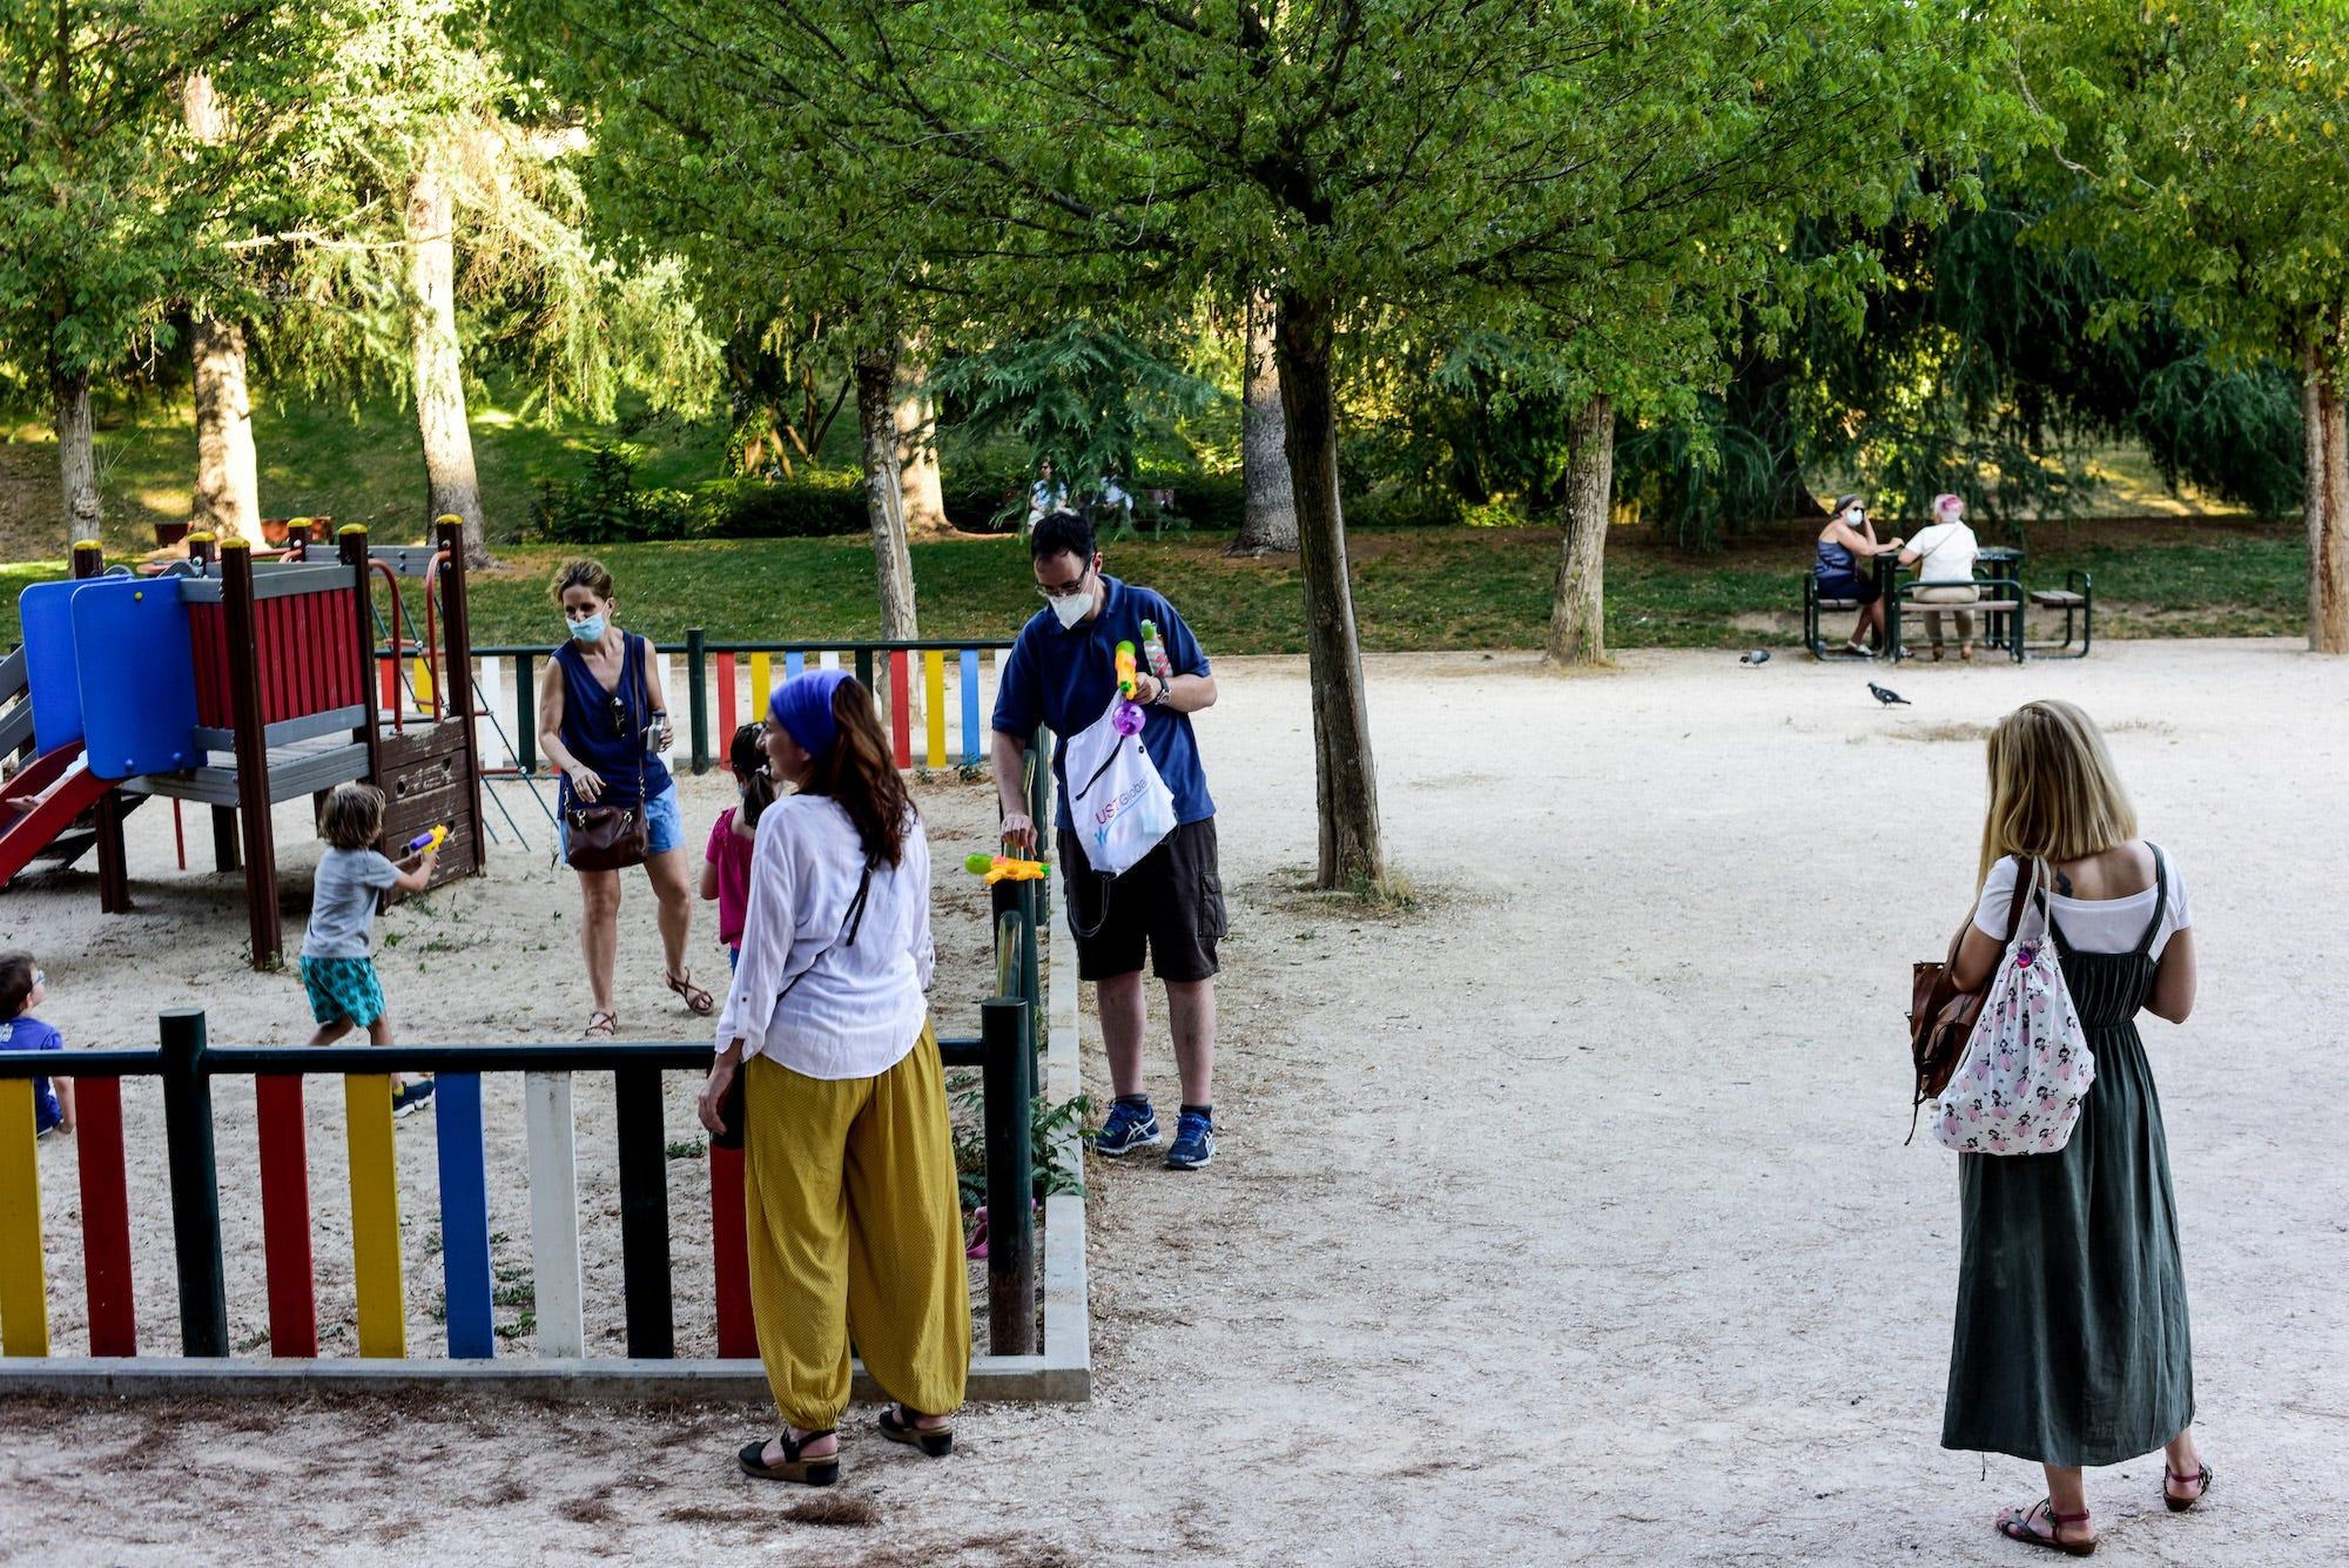 Los padres supervisan a sus hijos desde fuera del parque el 23 de junio de 2020 en Madrid.